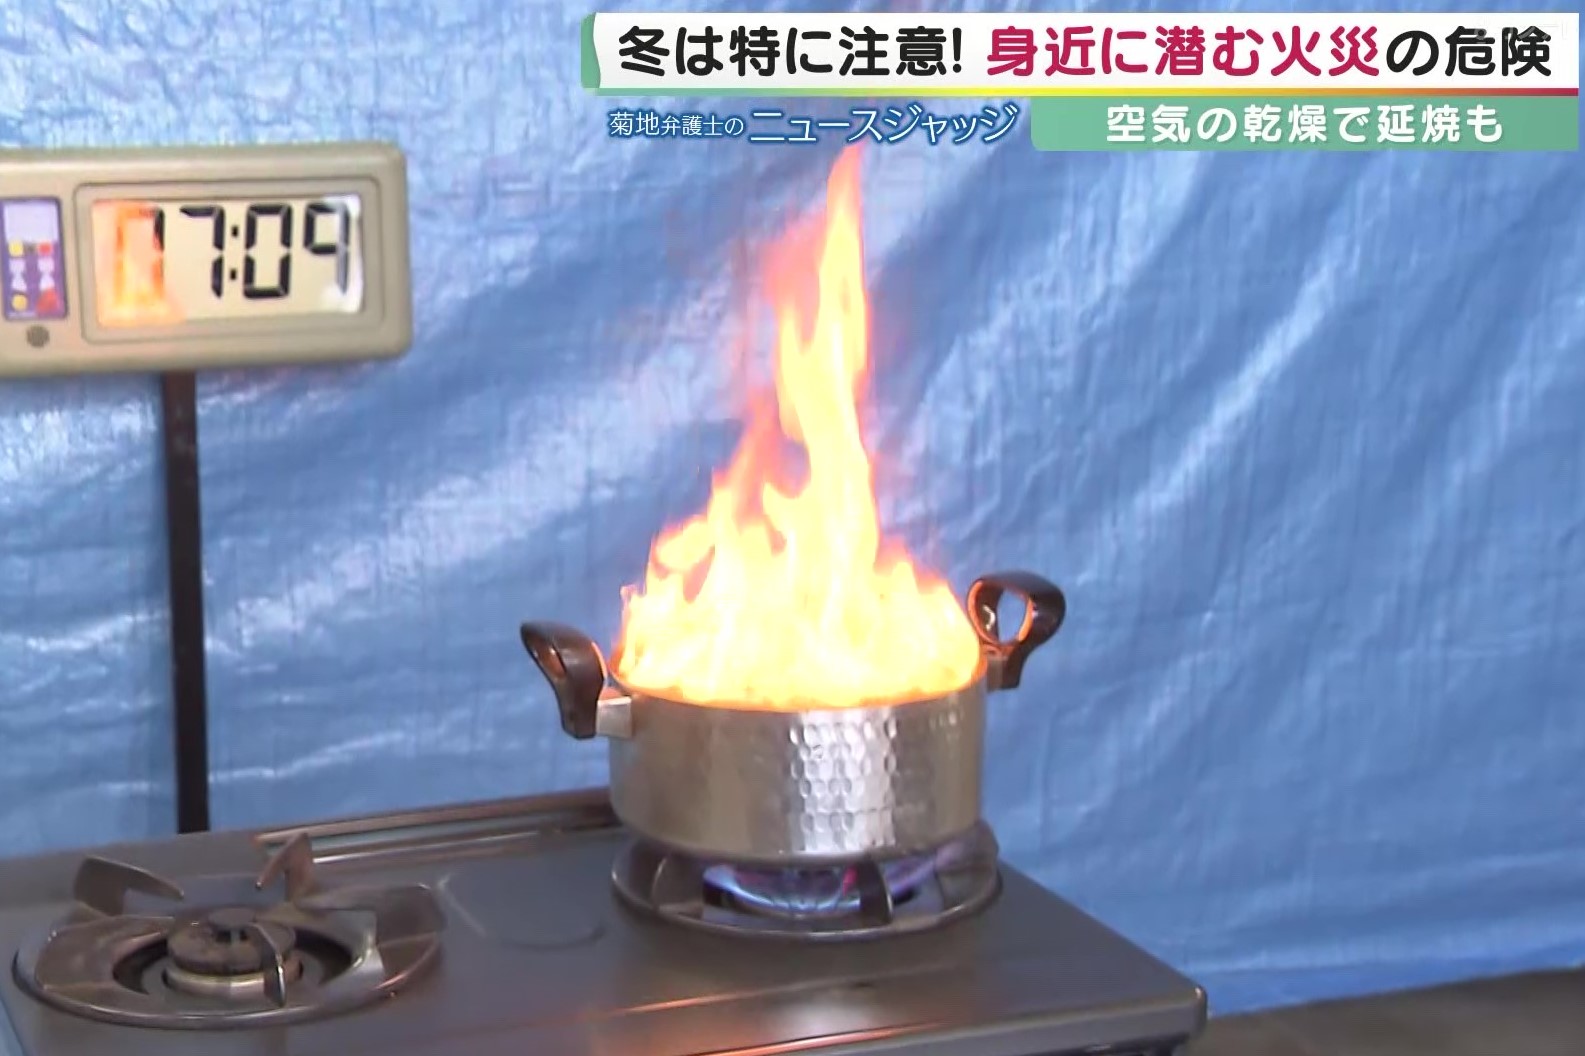 スイッチは『後から切る』…消防局に聞いた“天ぷら油火災の正しい消火方法” コロナ禍で自炊が増えて増加傾向